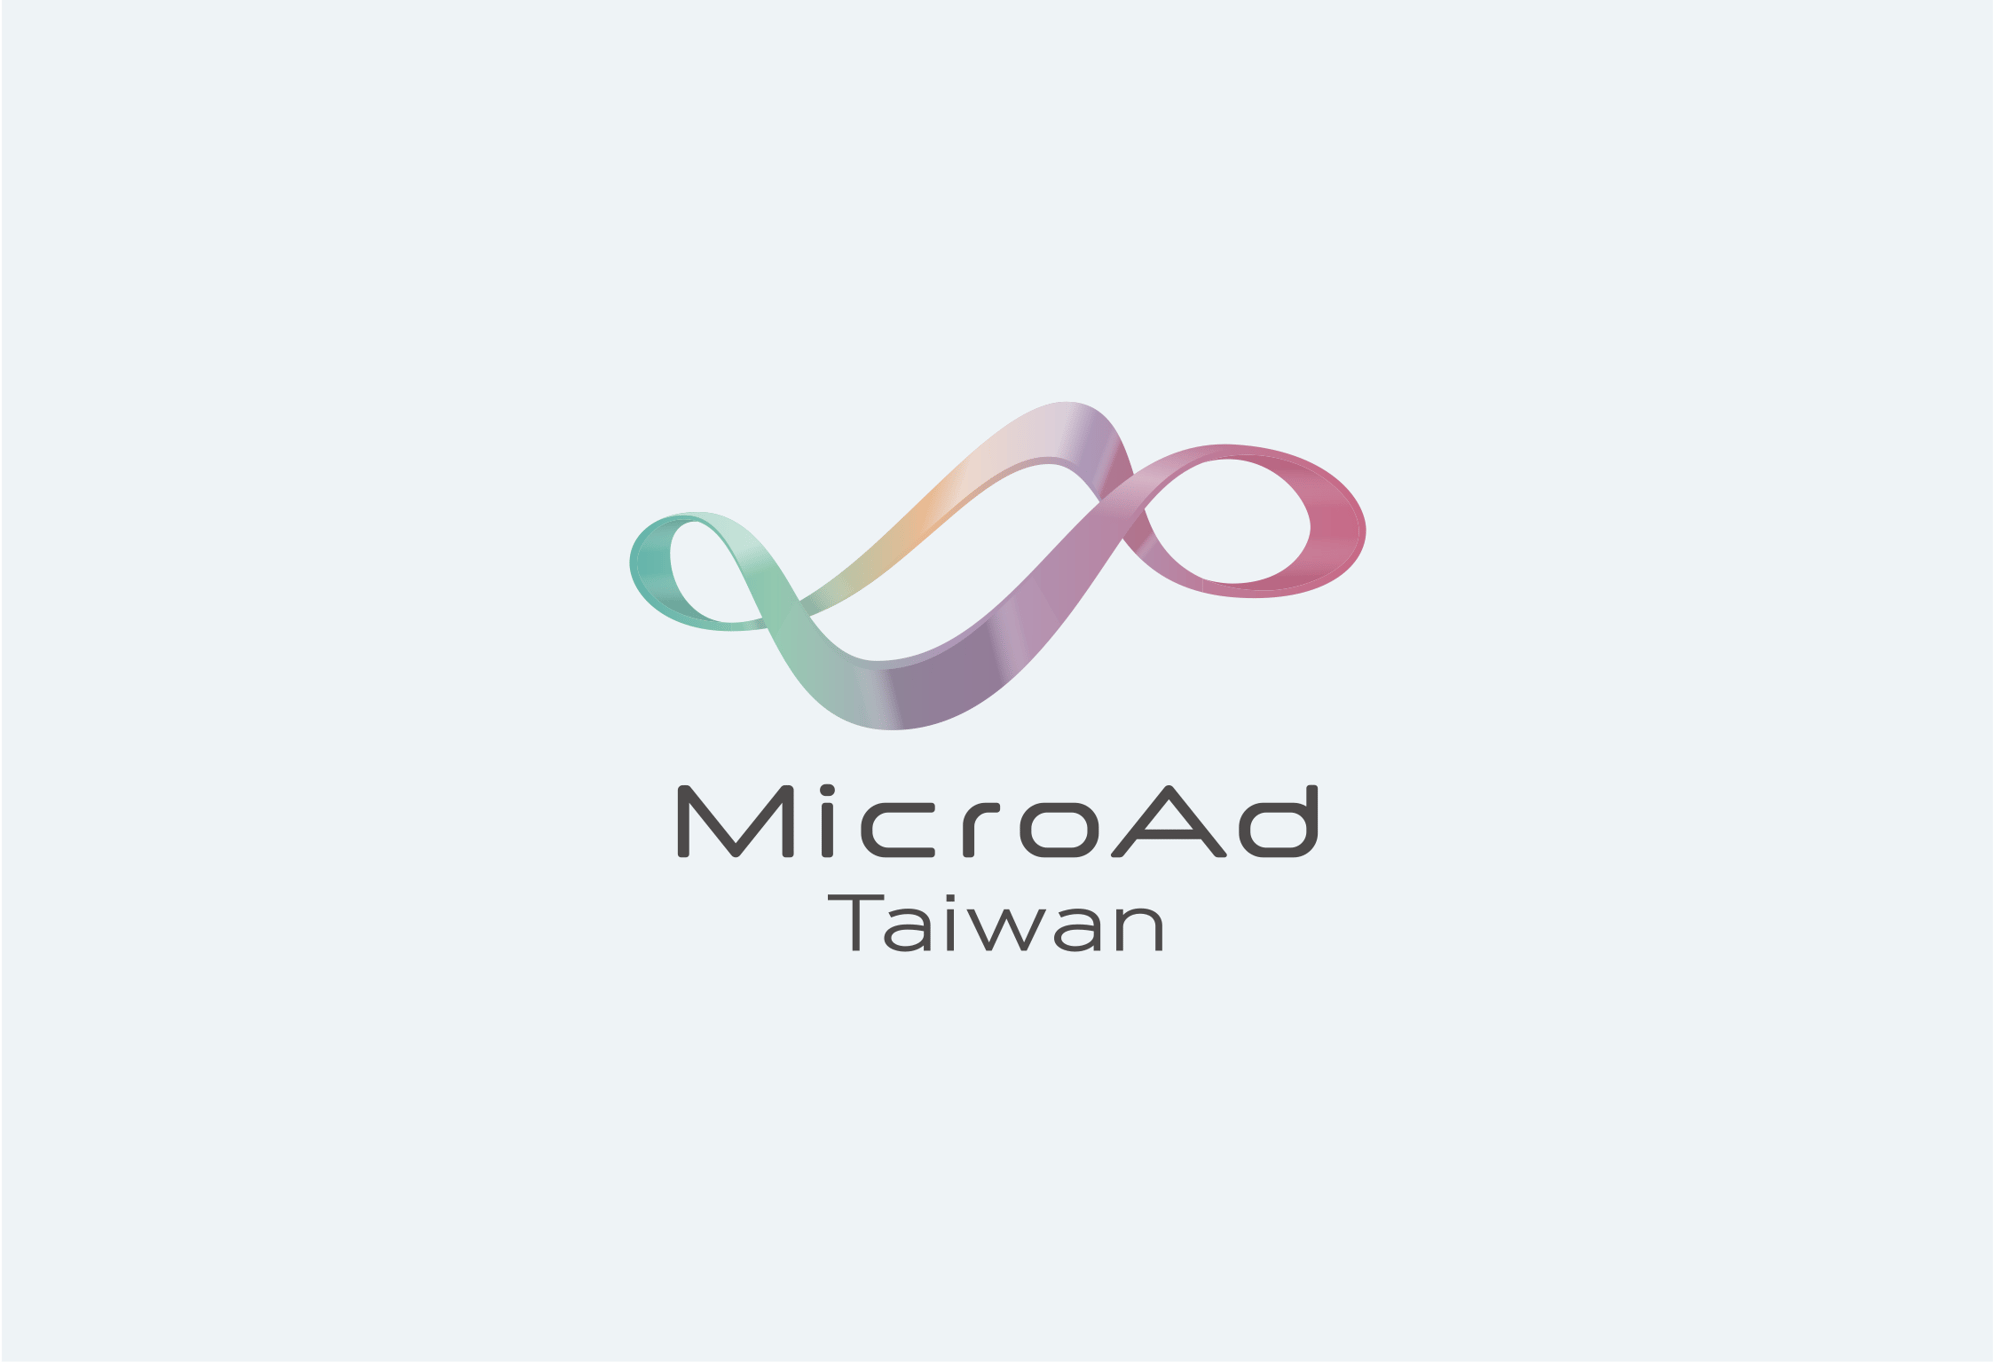 MicroAd_Taiwan_logo-1